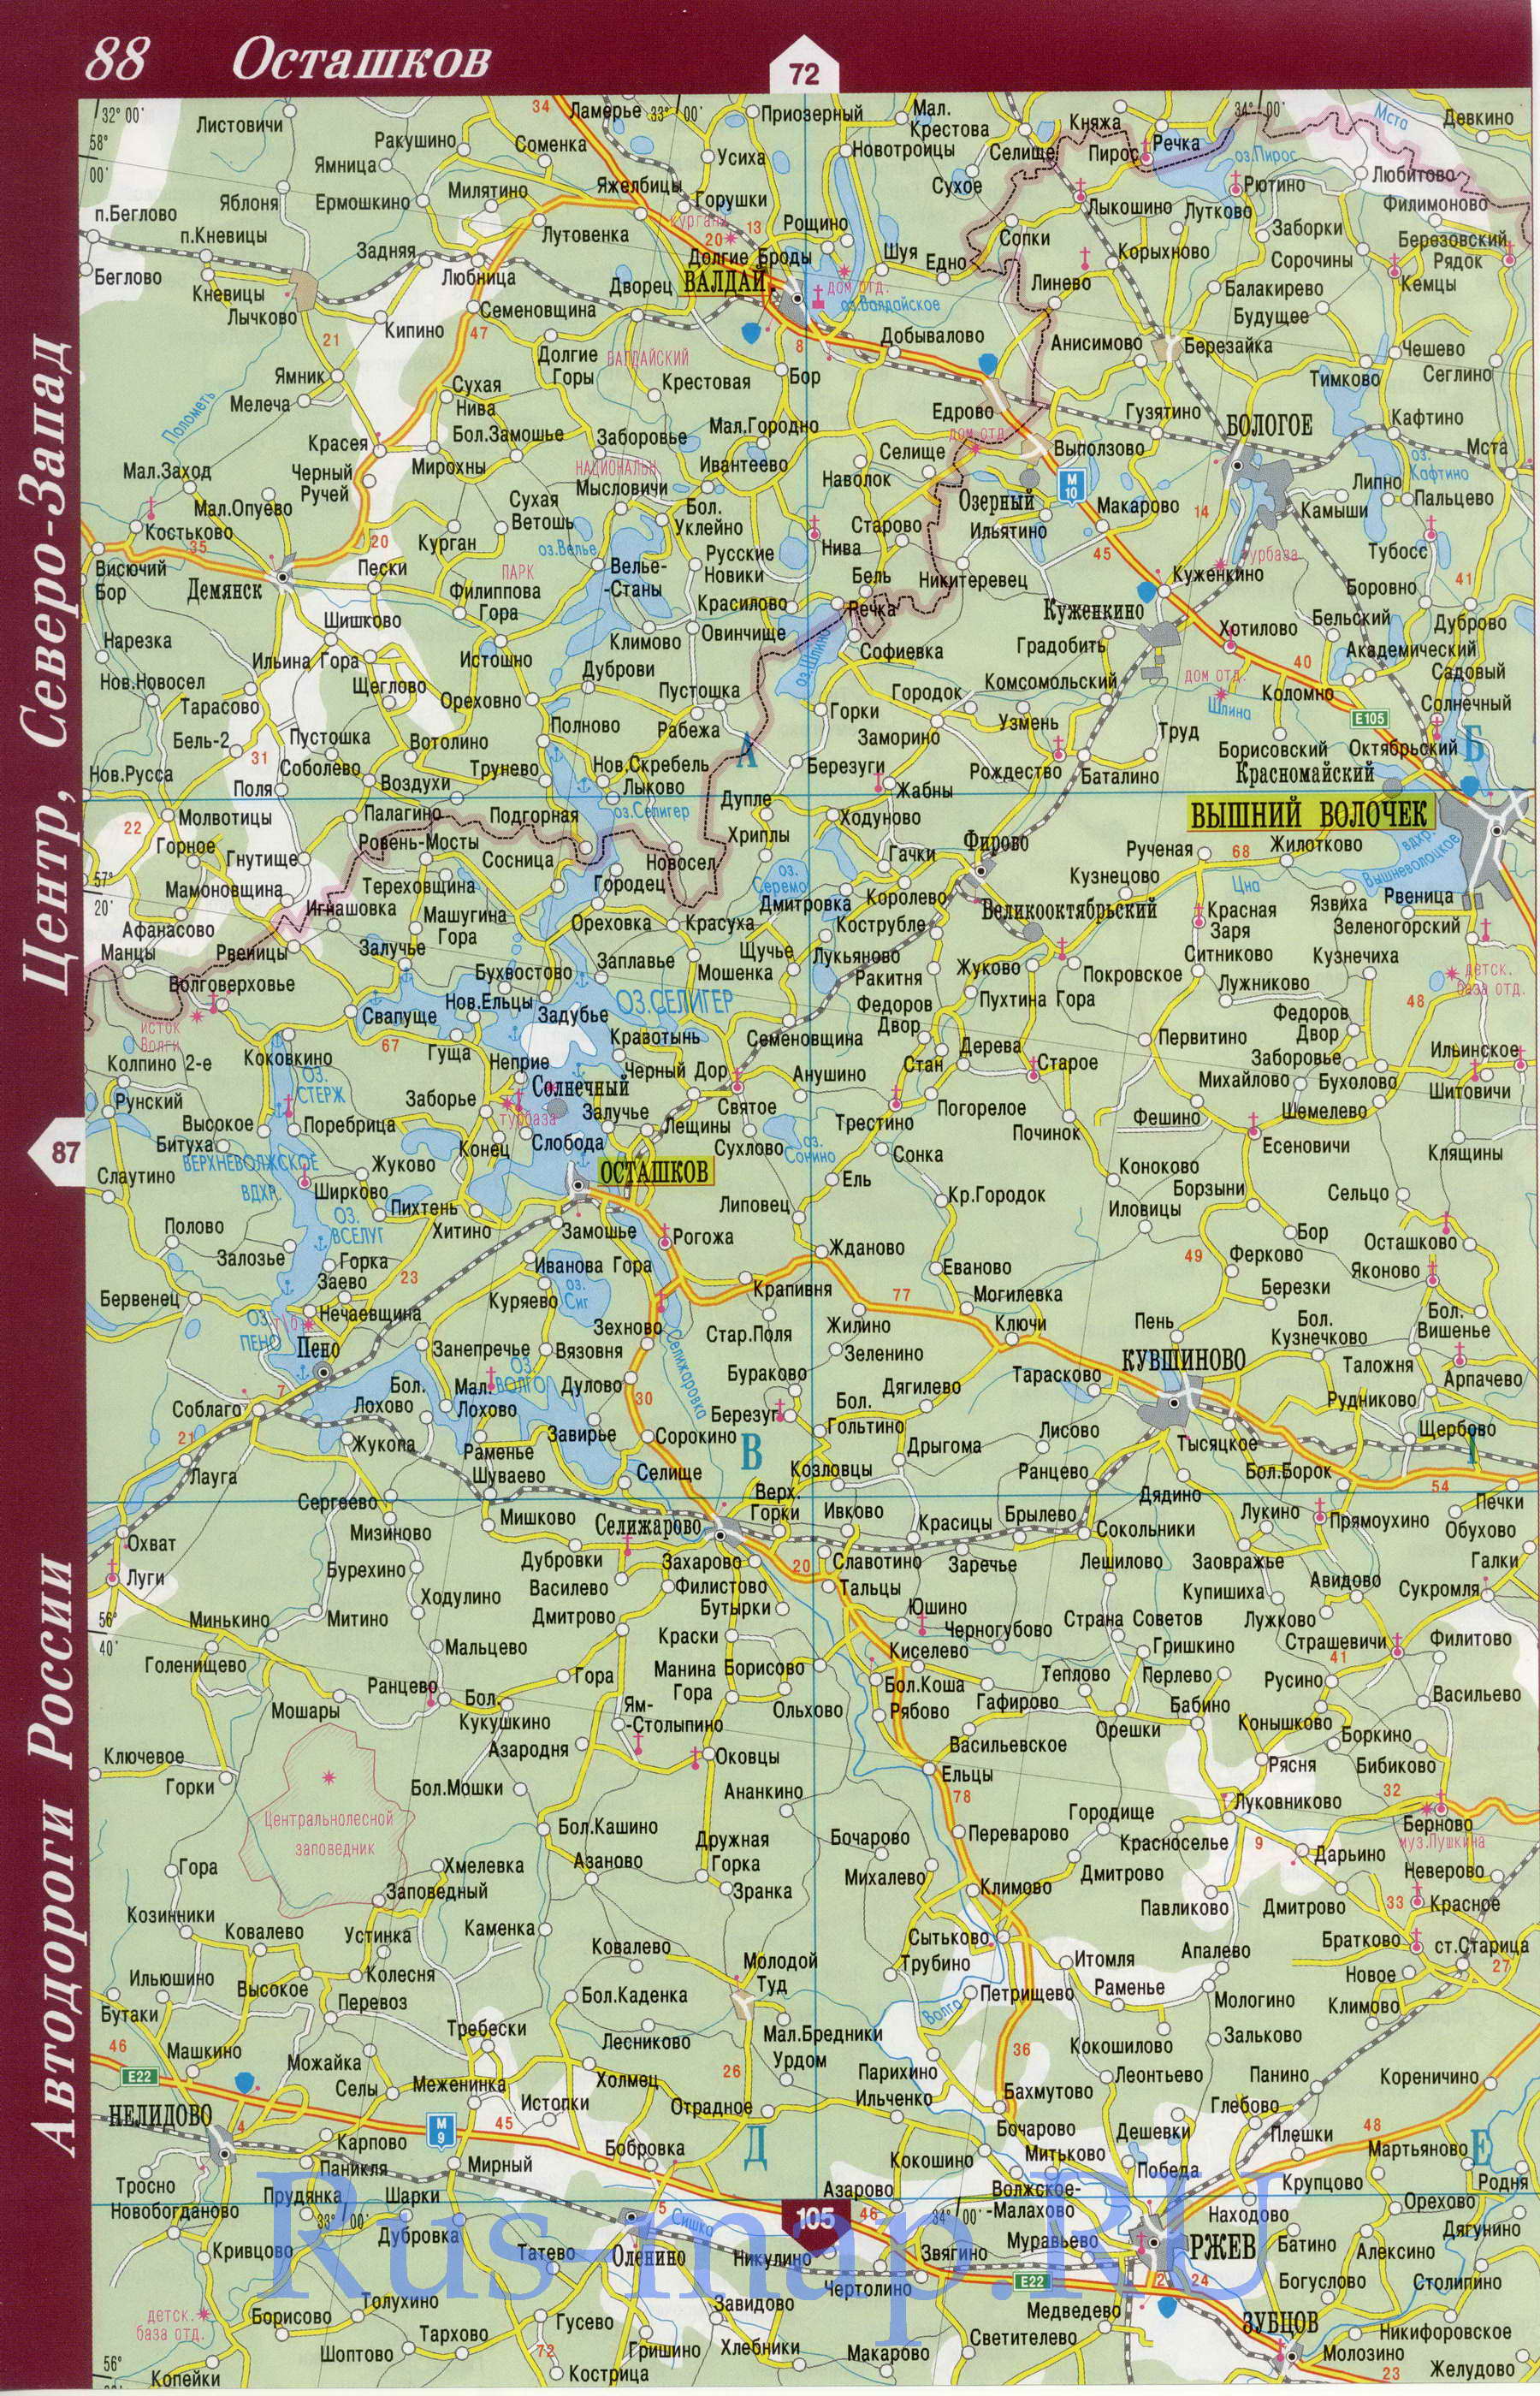 Карта Тверской области 2010 года. Карта Тверской области из атласа дорог России, B0 - 